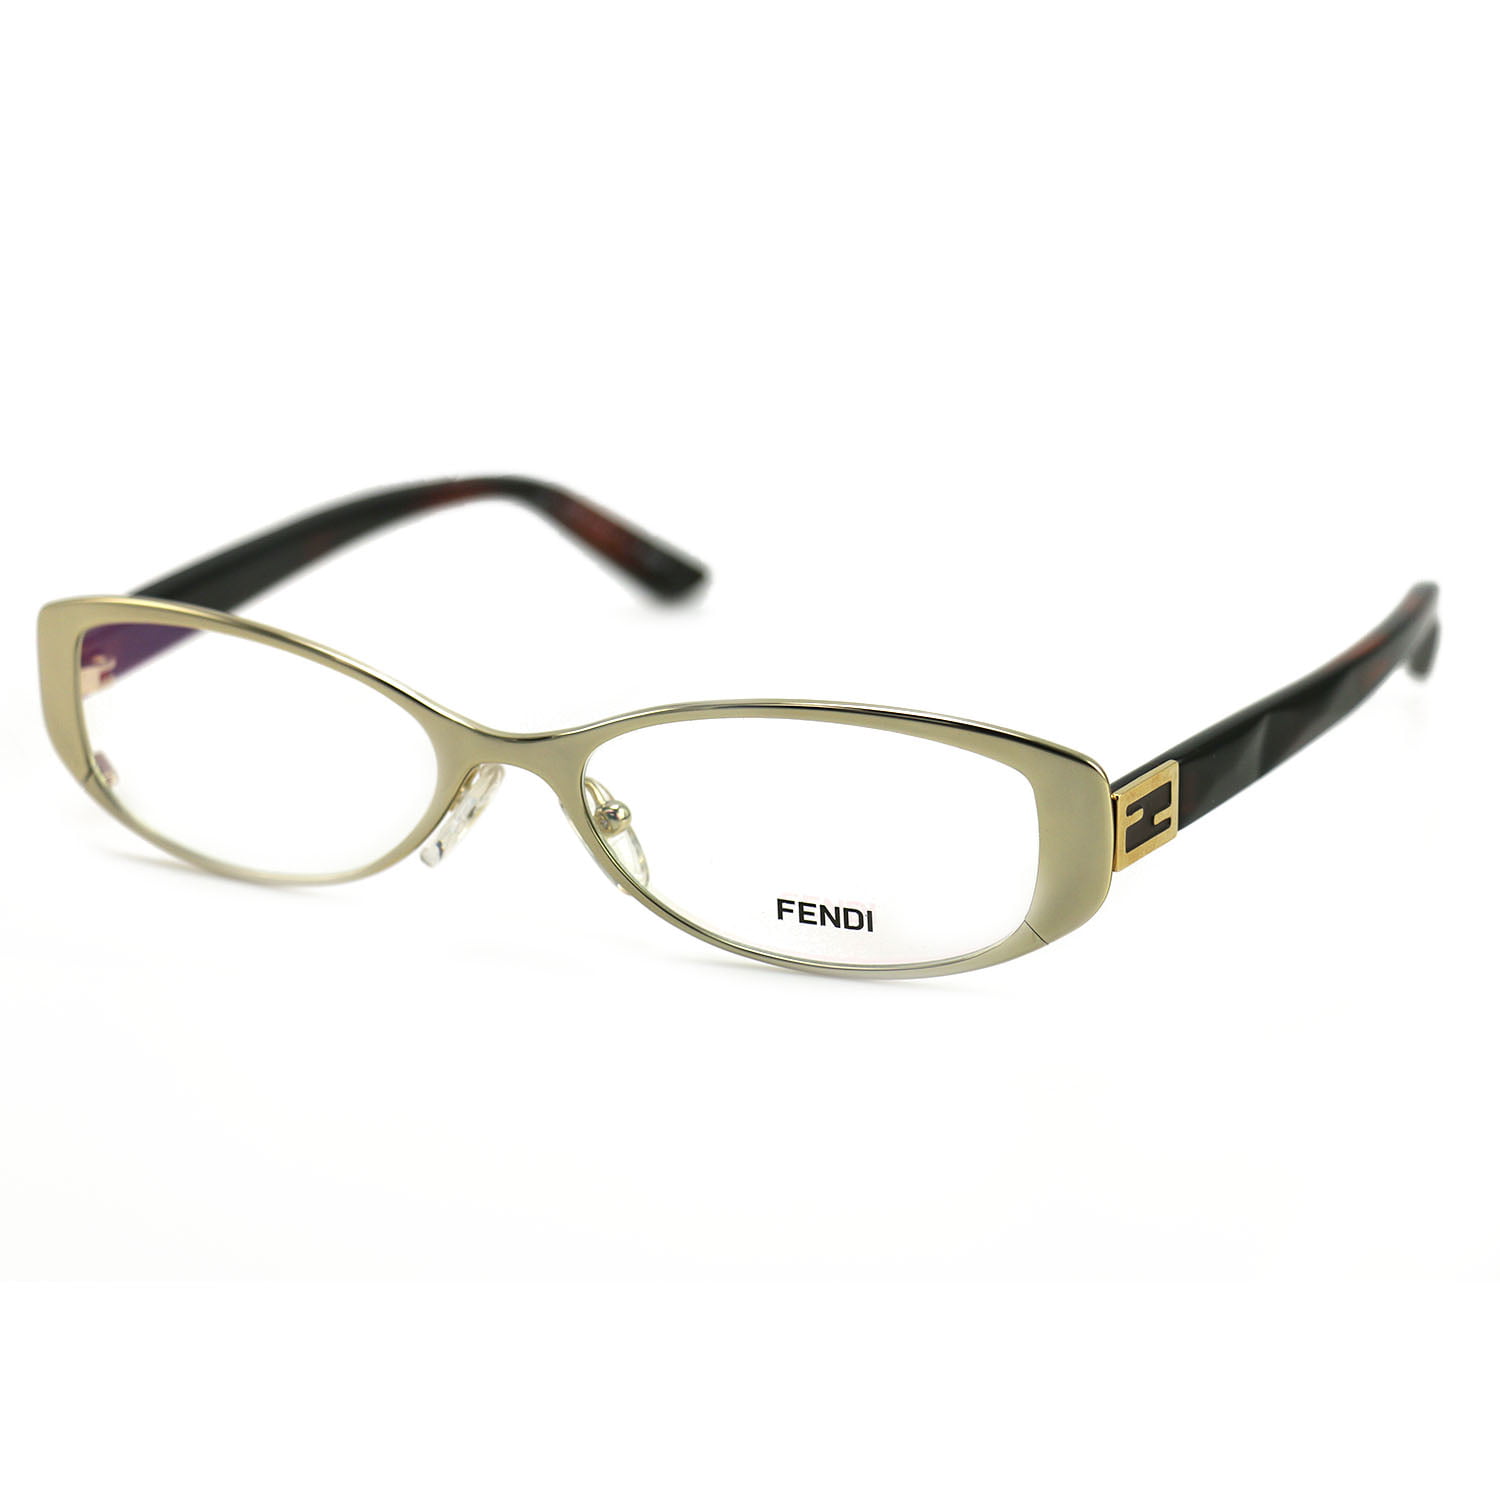 Fendi Womens Eyeglasses Ff 899 714 Gold Frame Glasses 50 16 140 Oval